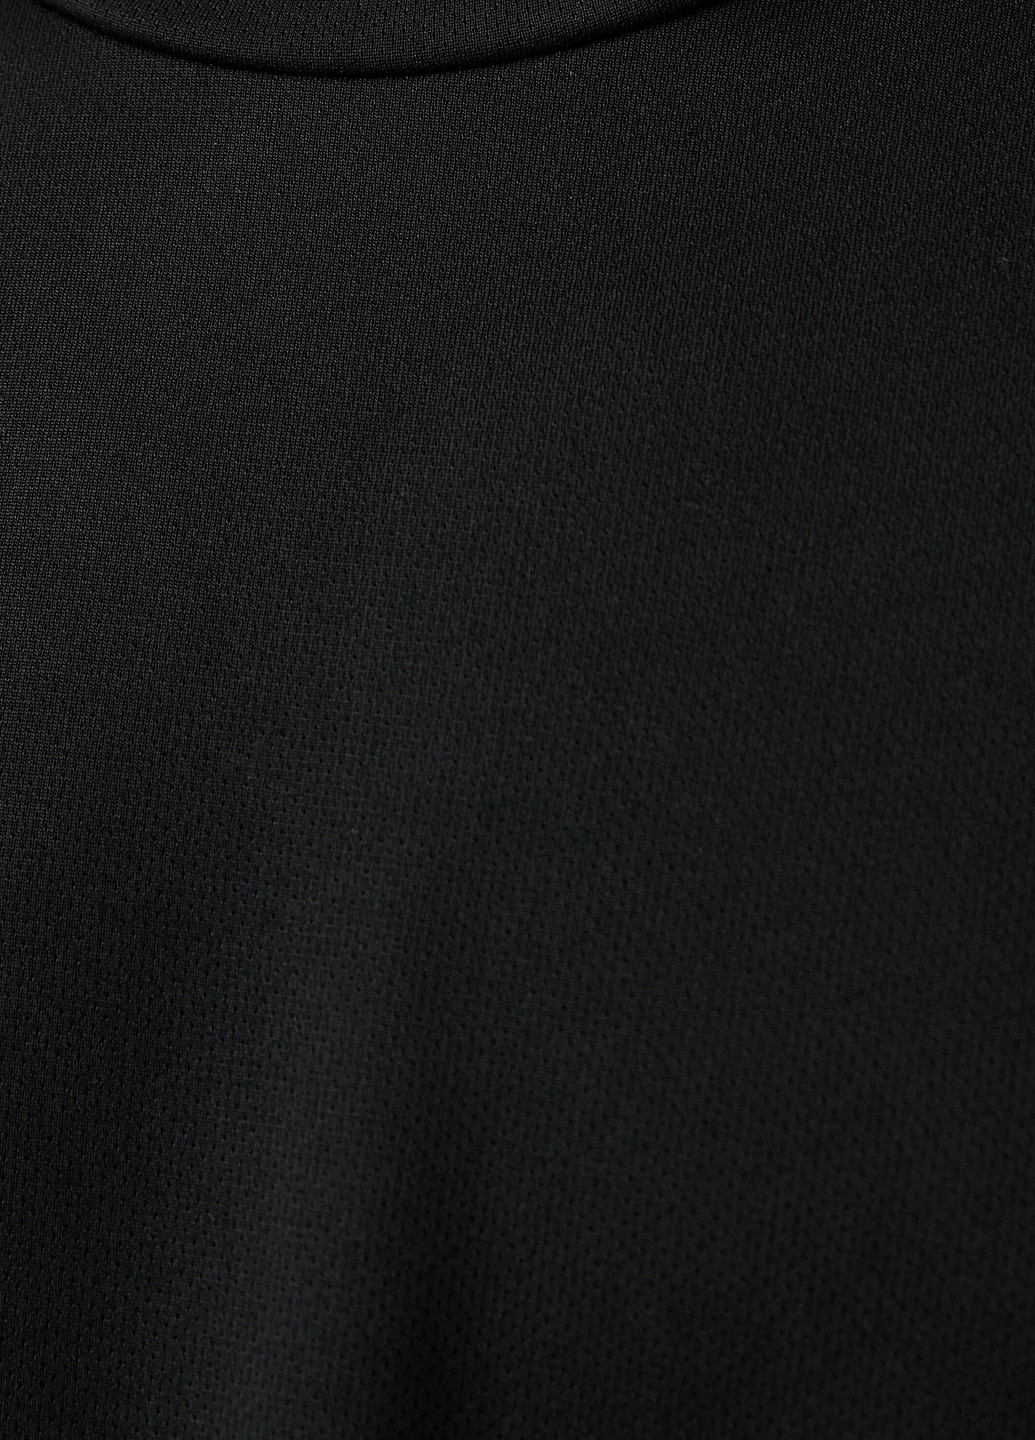 Черная футболка KOTON